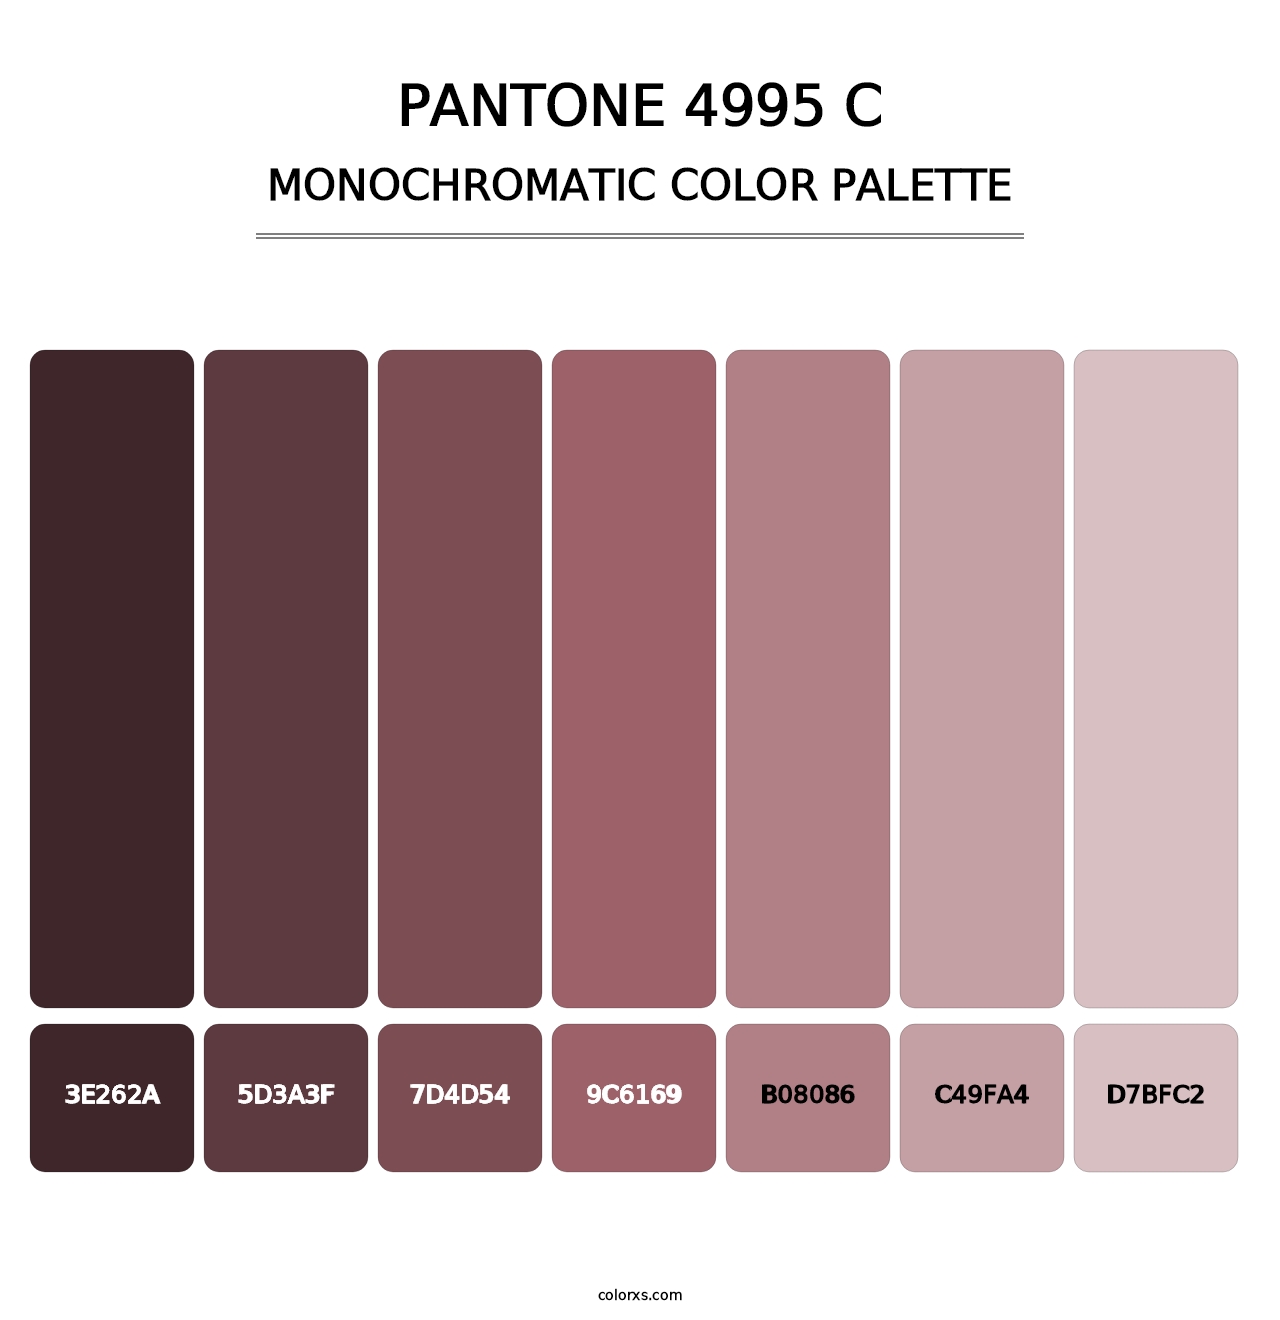 PANTONE 4995 C - Monochromatic Color Palette